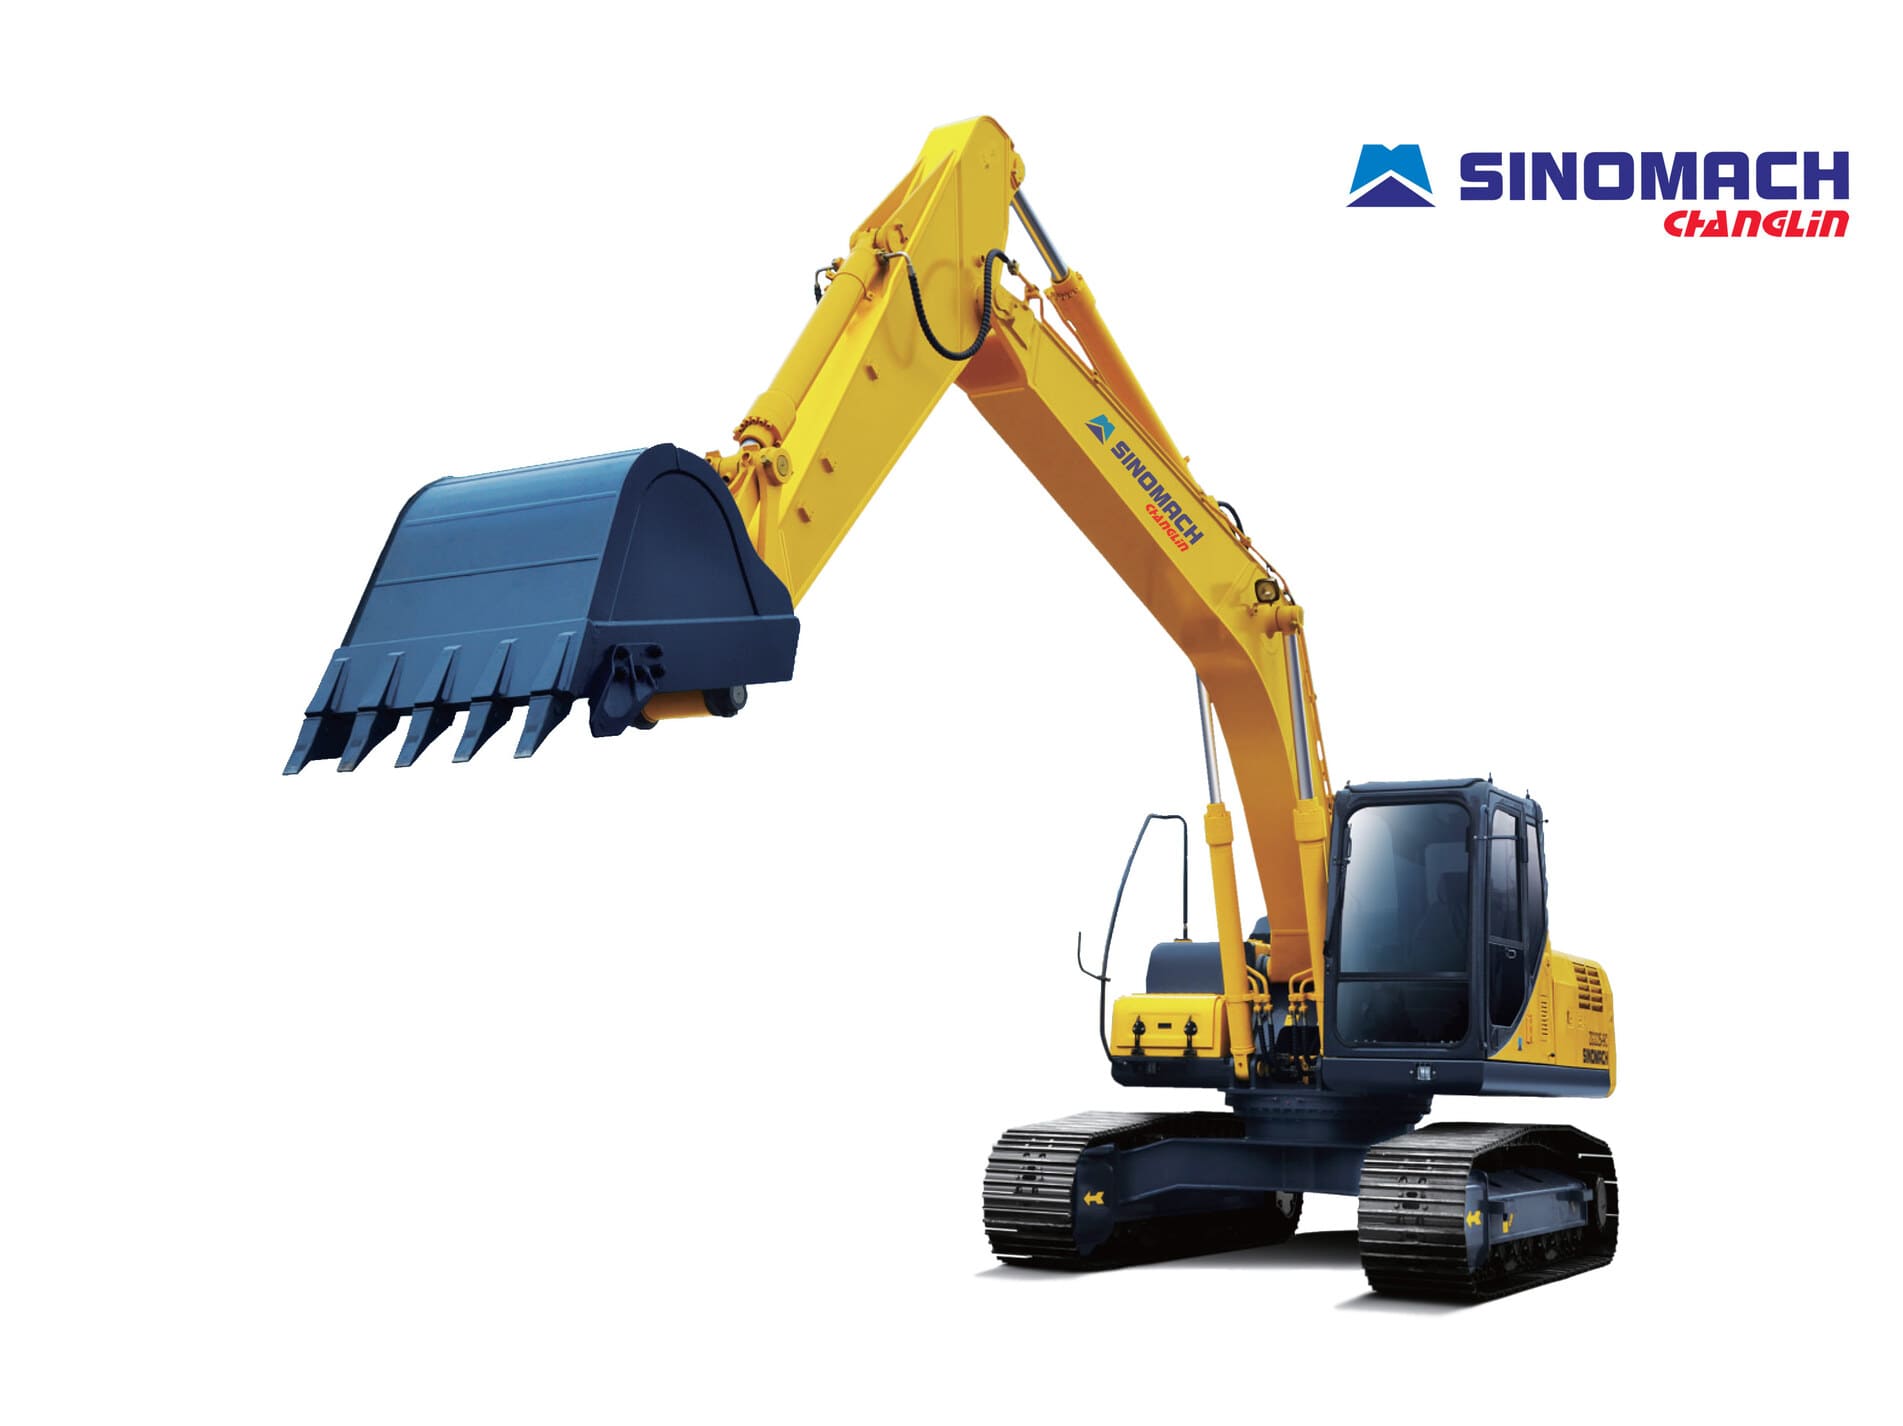 Excavator Sinimach Changlin Zg3255lc 9c 00